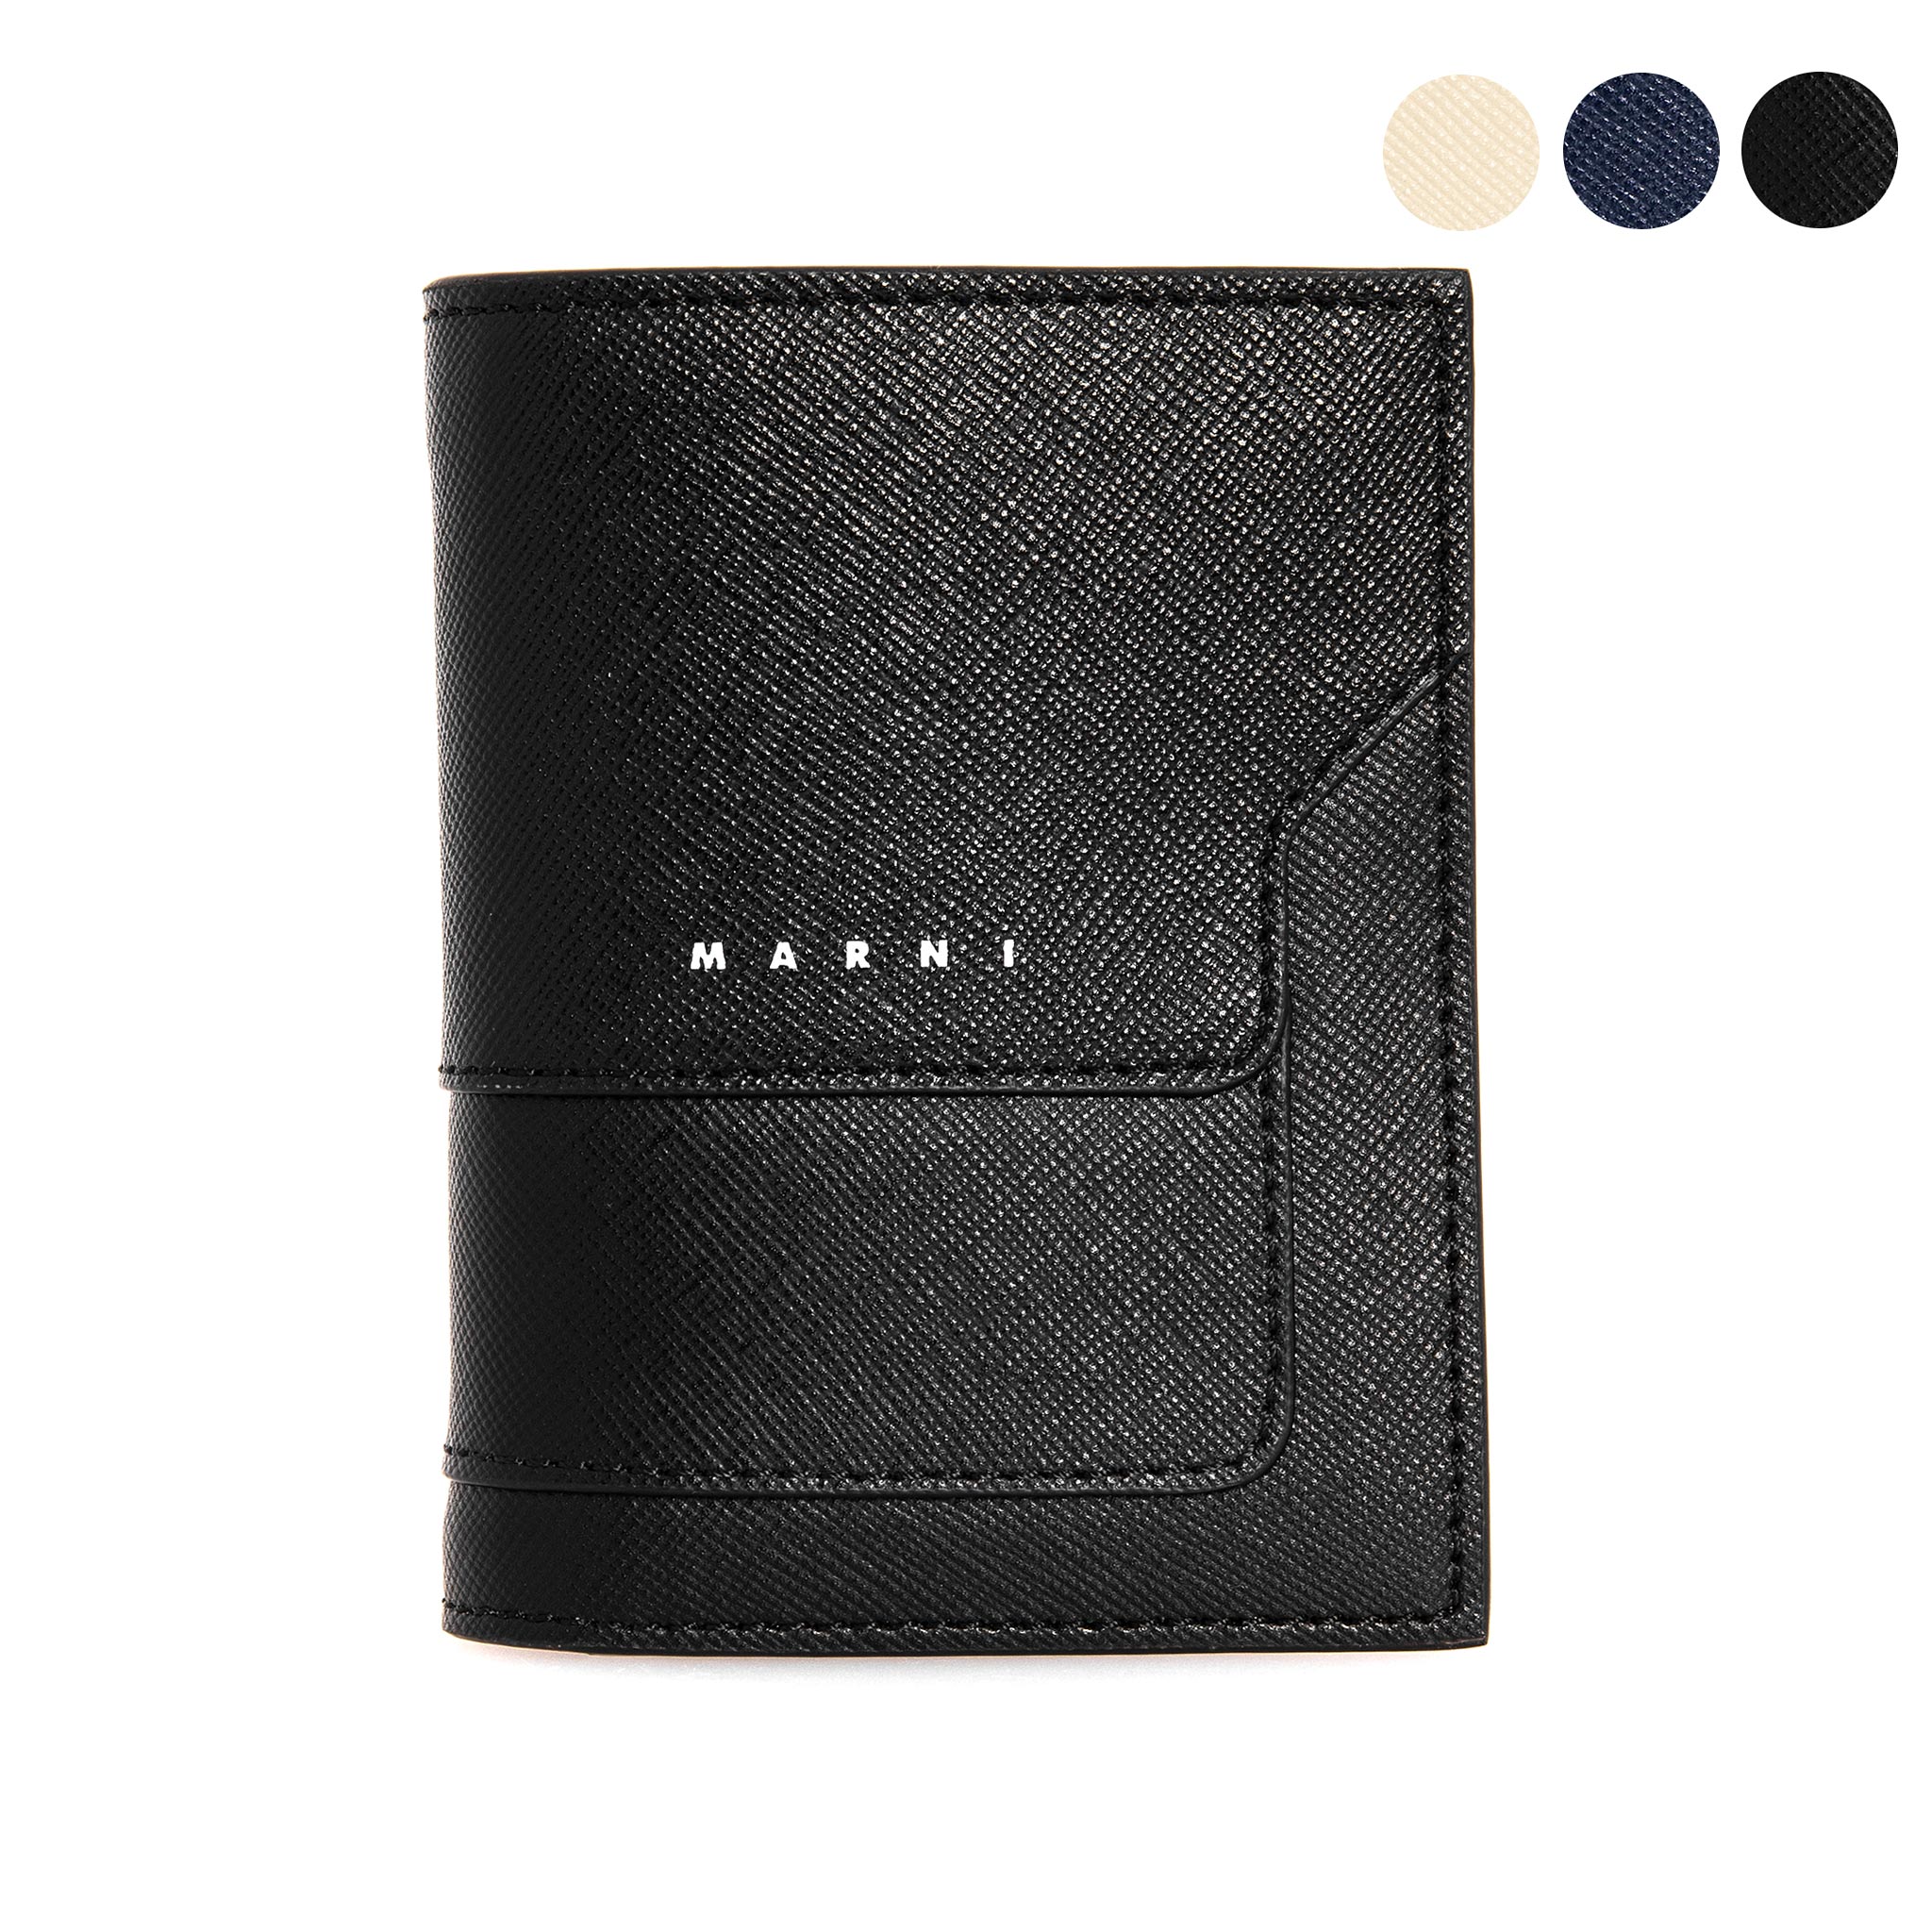 マルニ 財布 メンズ マルニ MARNI 財布 メンズ 二つ折り財布（小銭入れ付き） BI-FOLD WALLET [二つ折りウォレット] PFMI0046U0 LV520